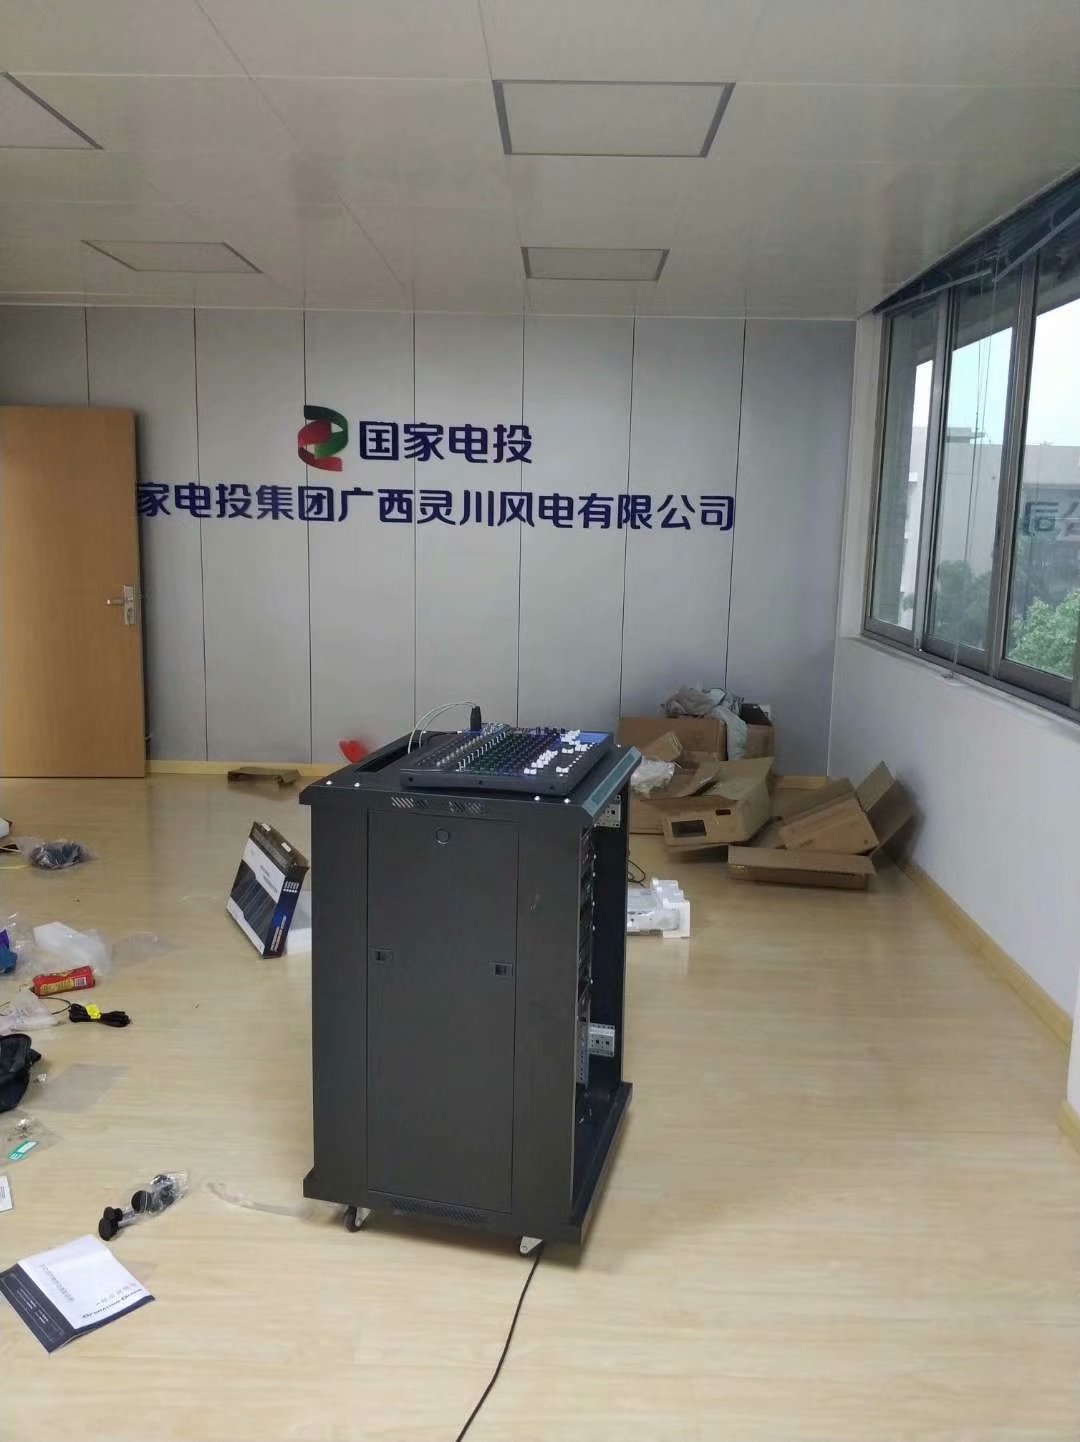 龙胜县国家电投项目部会议室设备